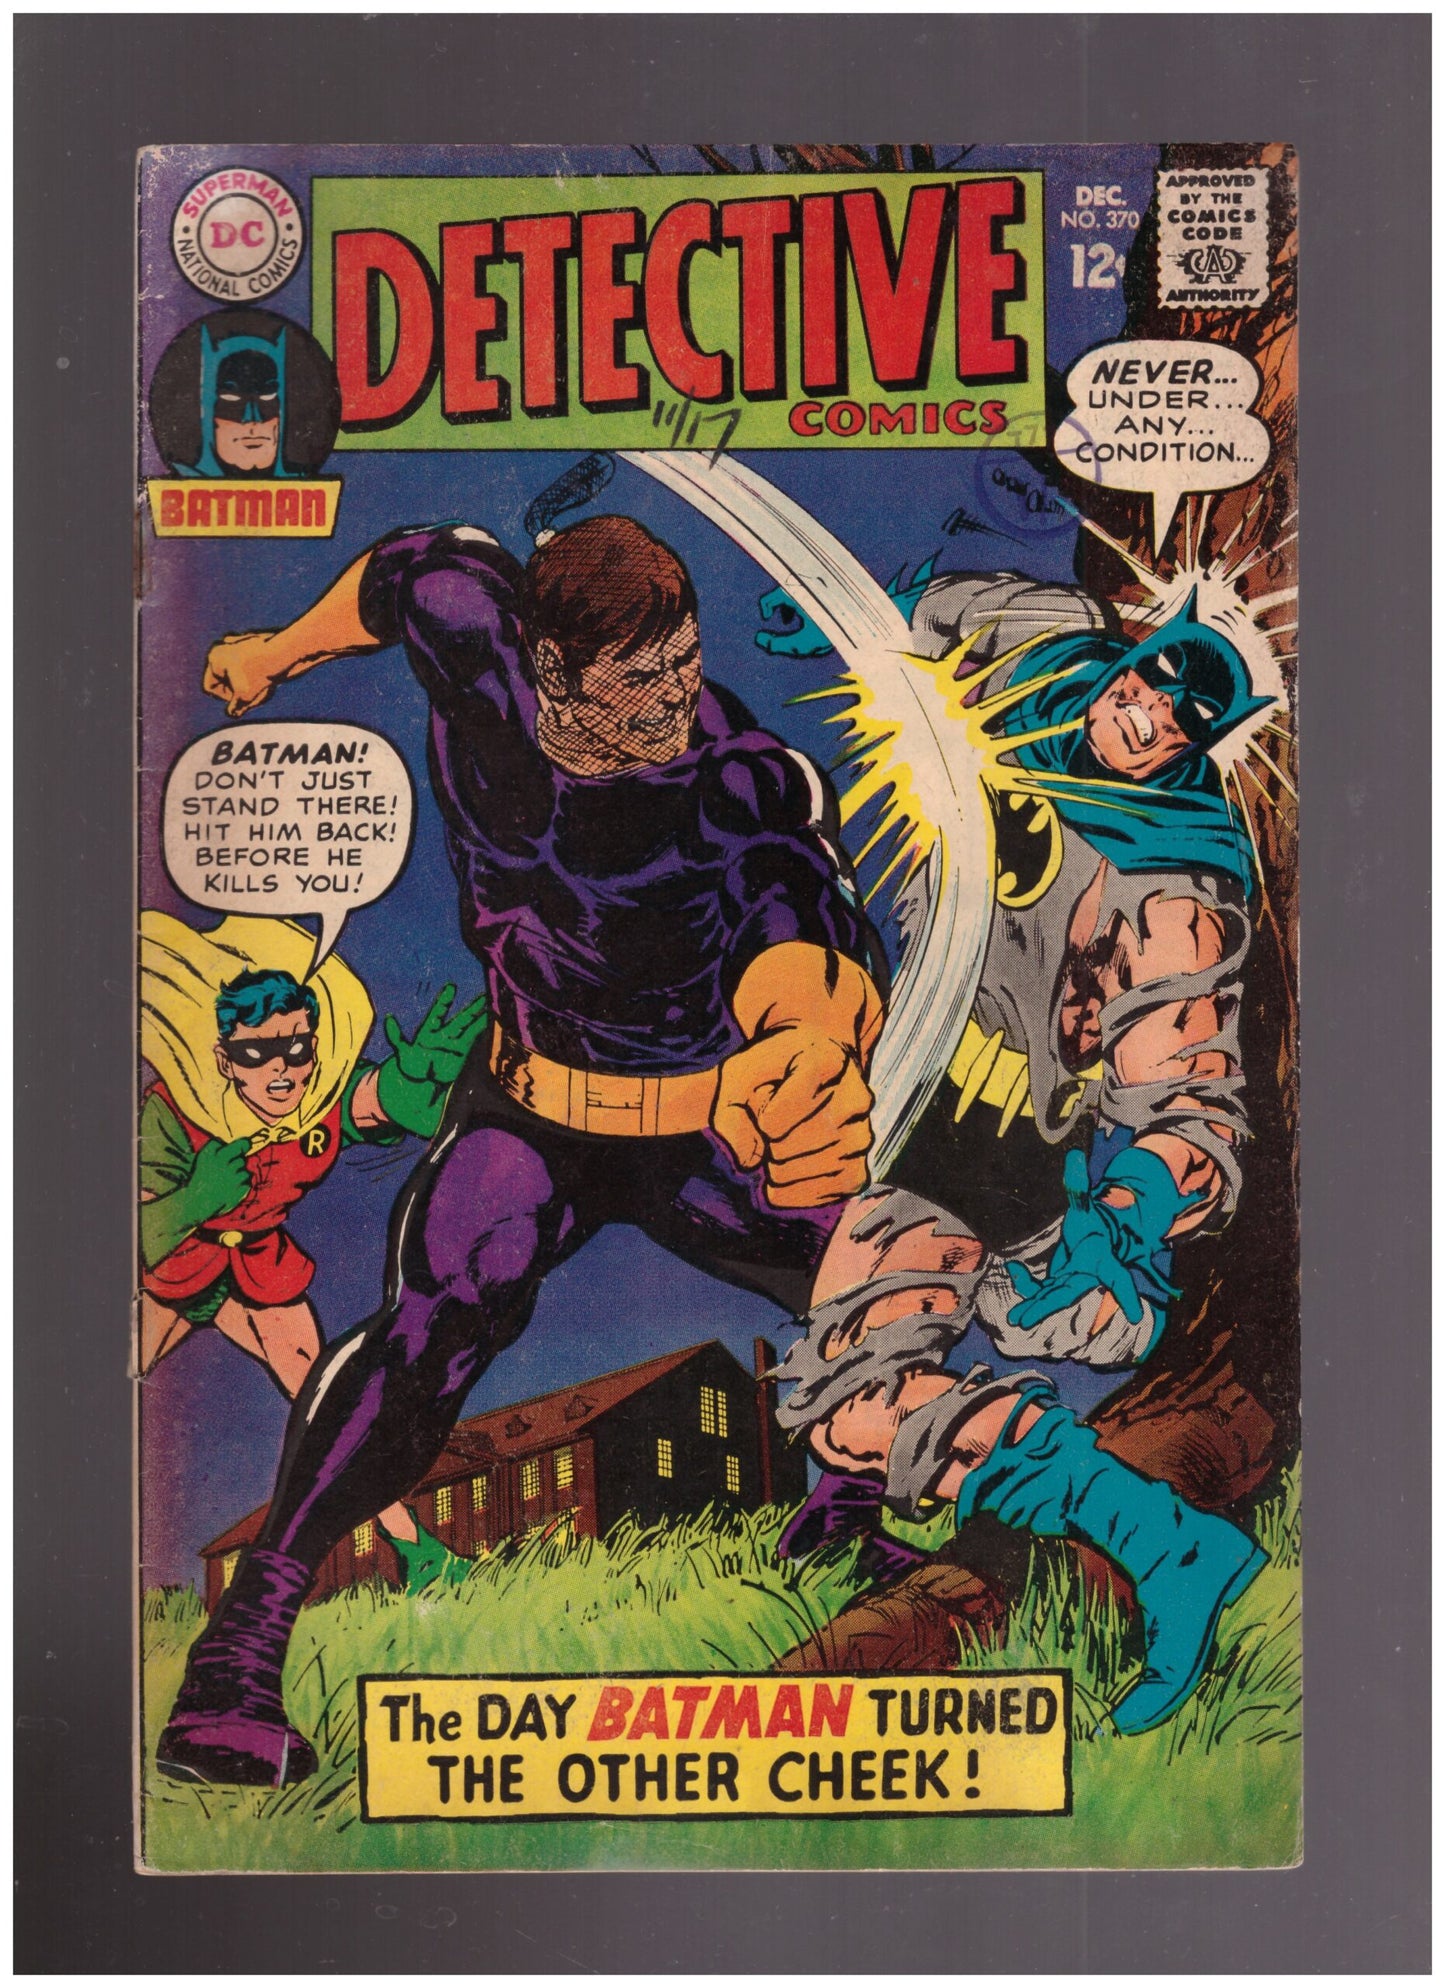 Detective Comics No 370 Dec 1967 from DC Comics